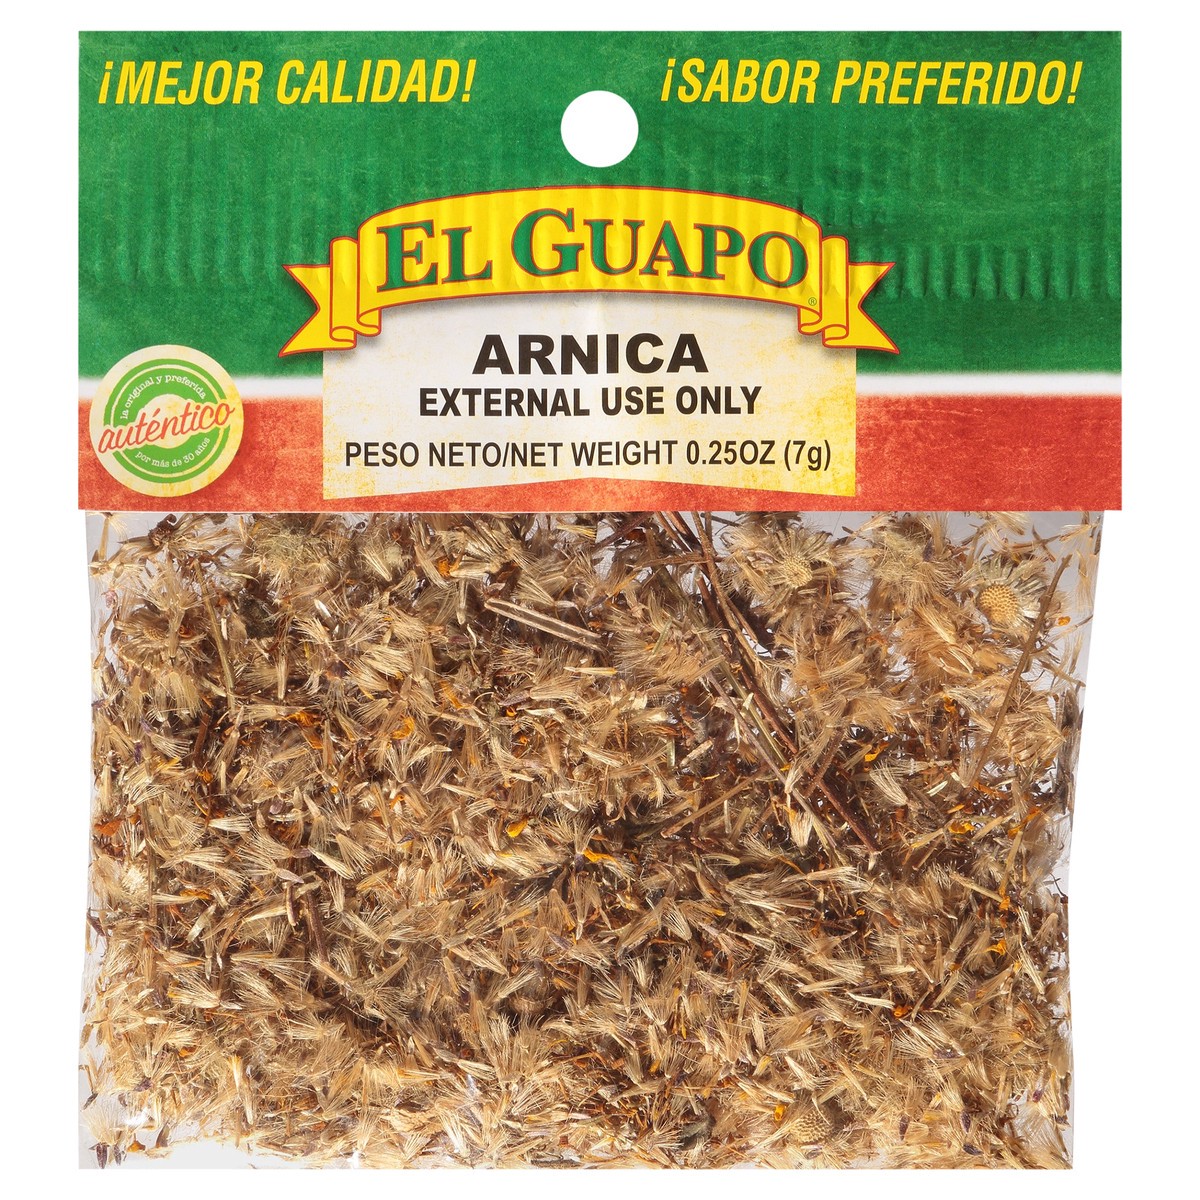 slide 4 of 10, El Guapo External Use Only Arnica 0.25 oz. Bag, 0.25 oz